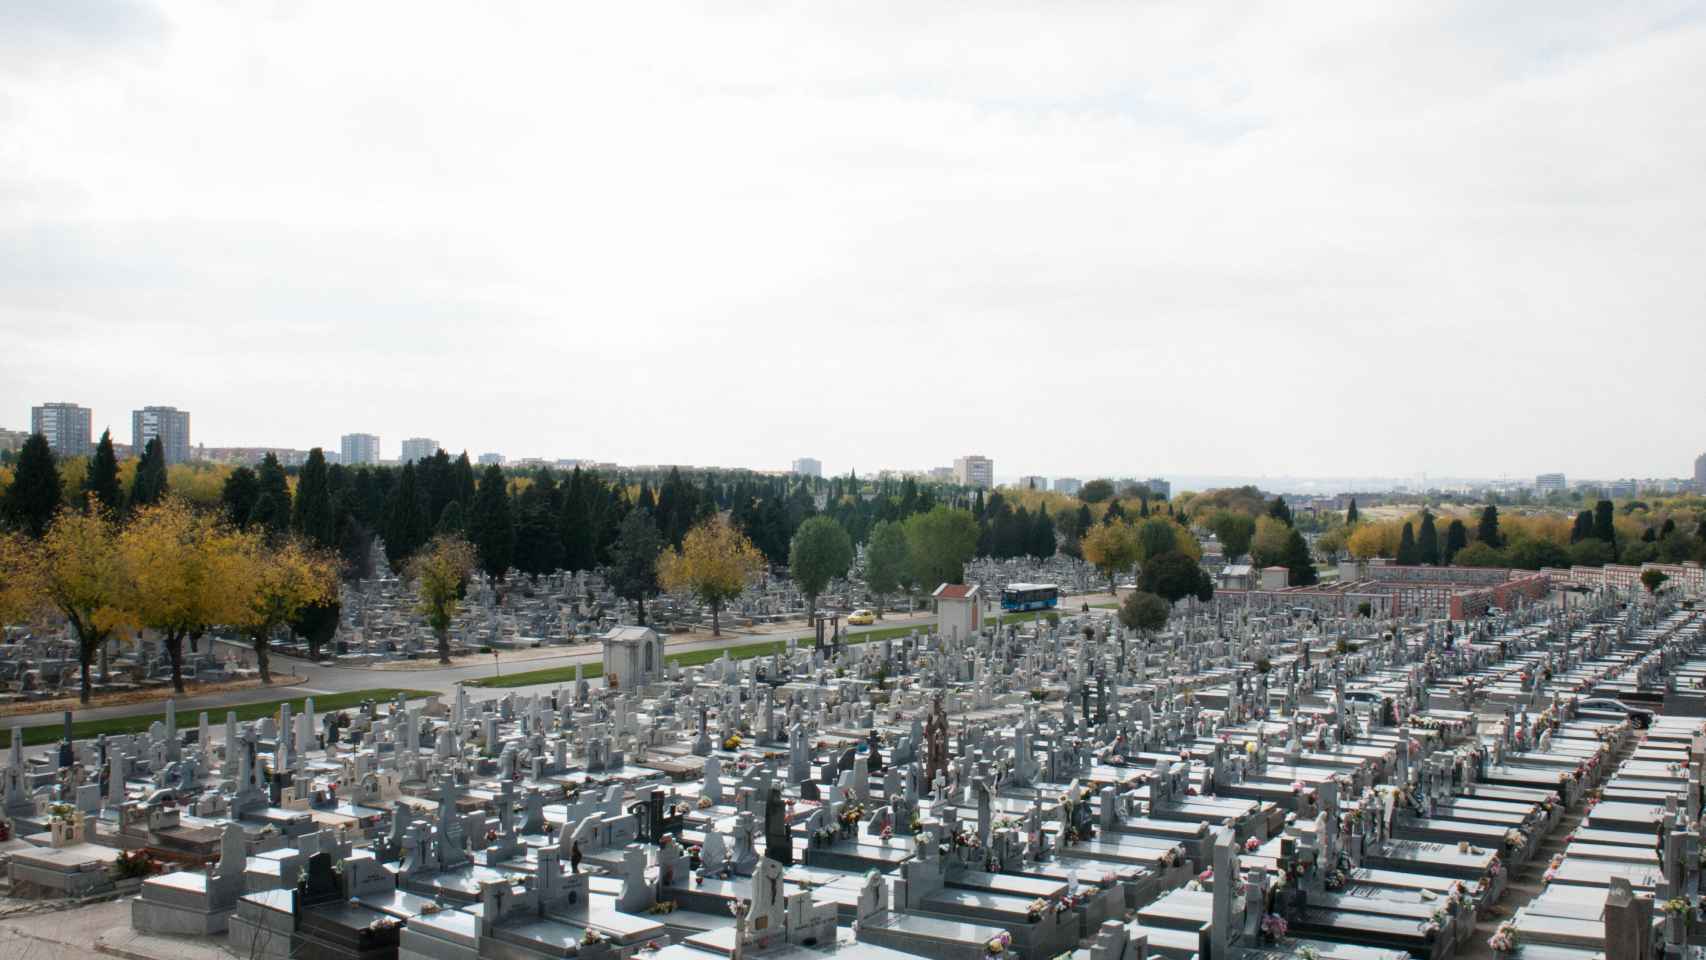 Vista general del cementerio de la Almudena, en Madrid, que con 120 hectáreas es el mayor de España.